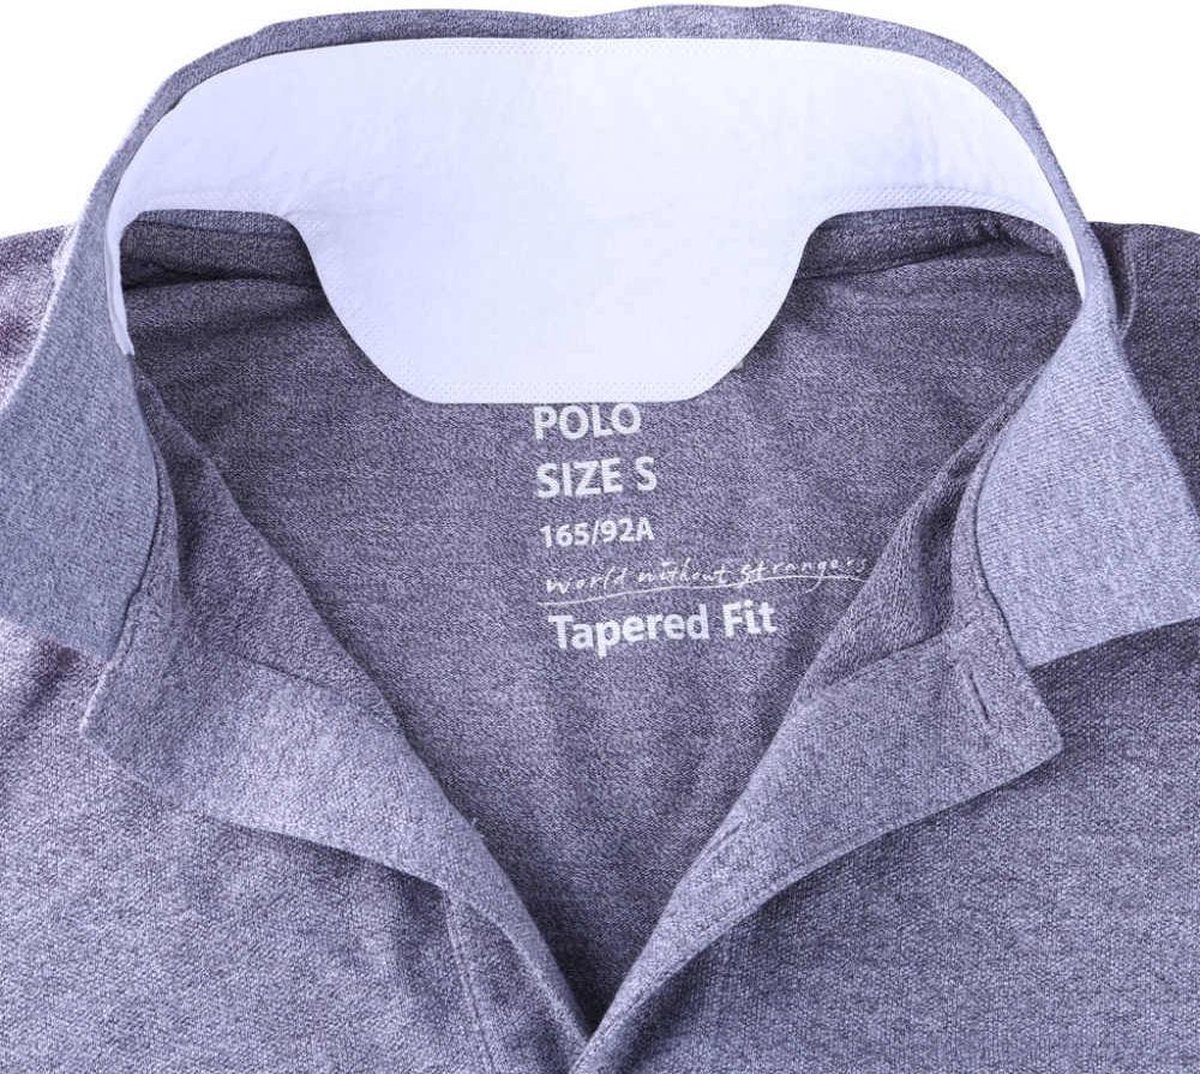 No Sweat - kraagbeschermers tegen zweetvlekken in overhemd kragen - 20-PACK  | bol.com